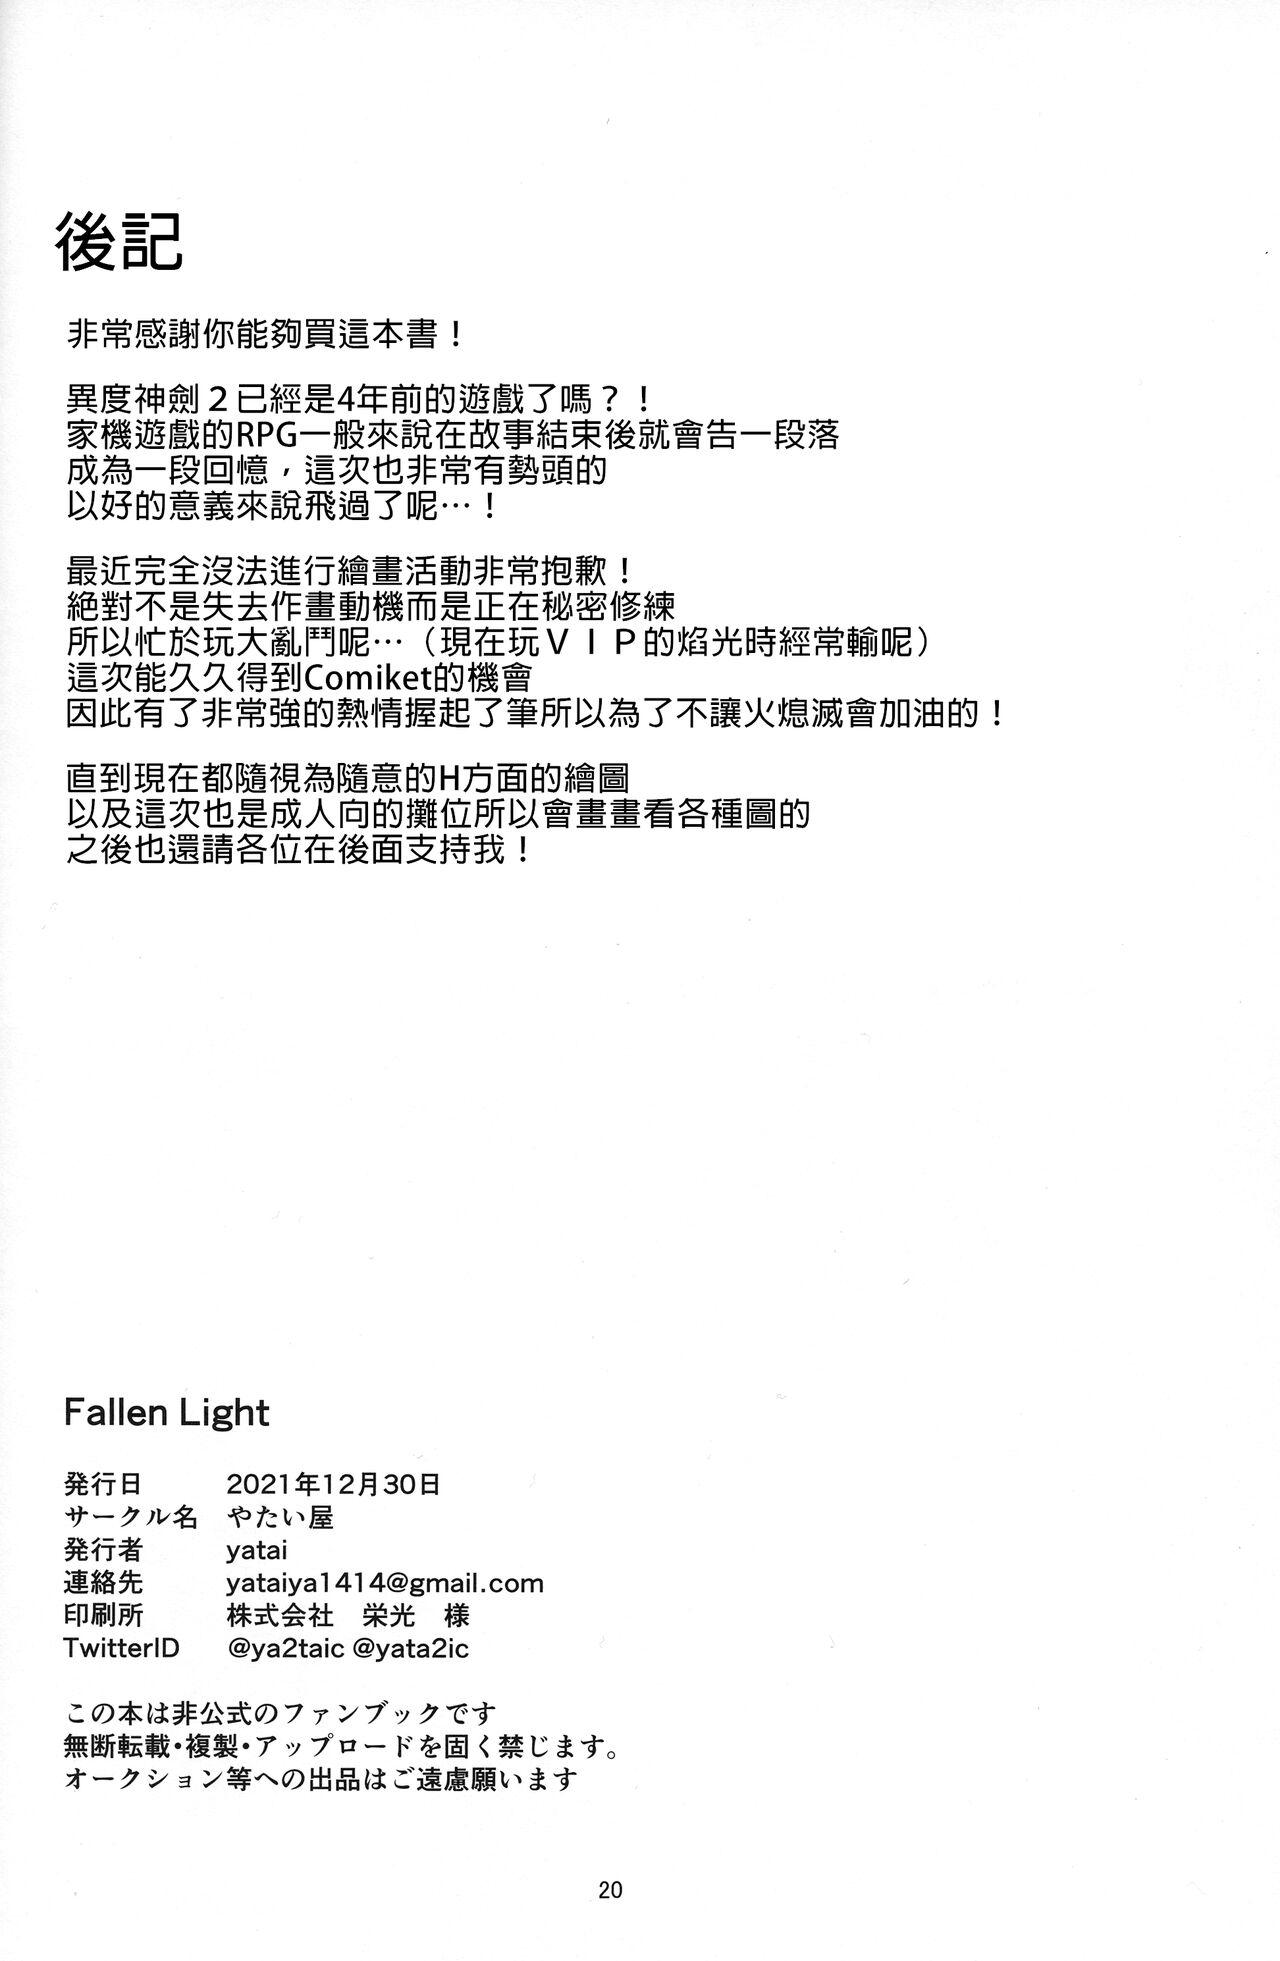 Fallen Light 18